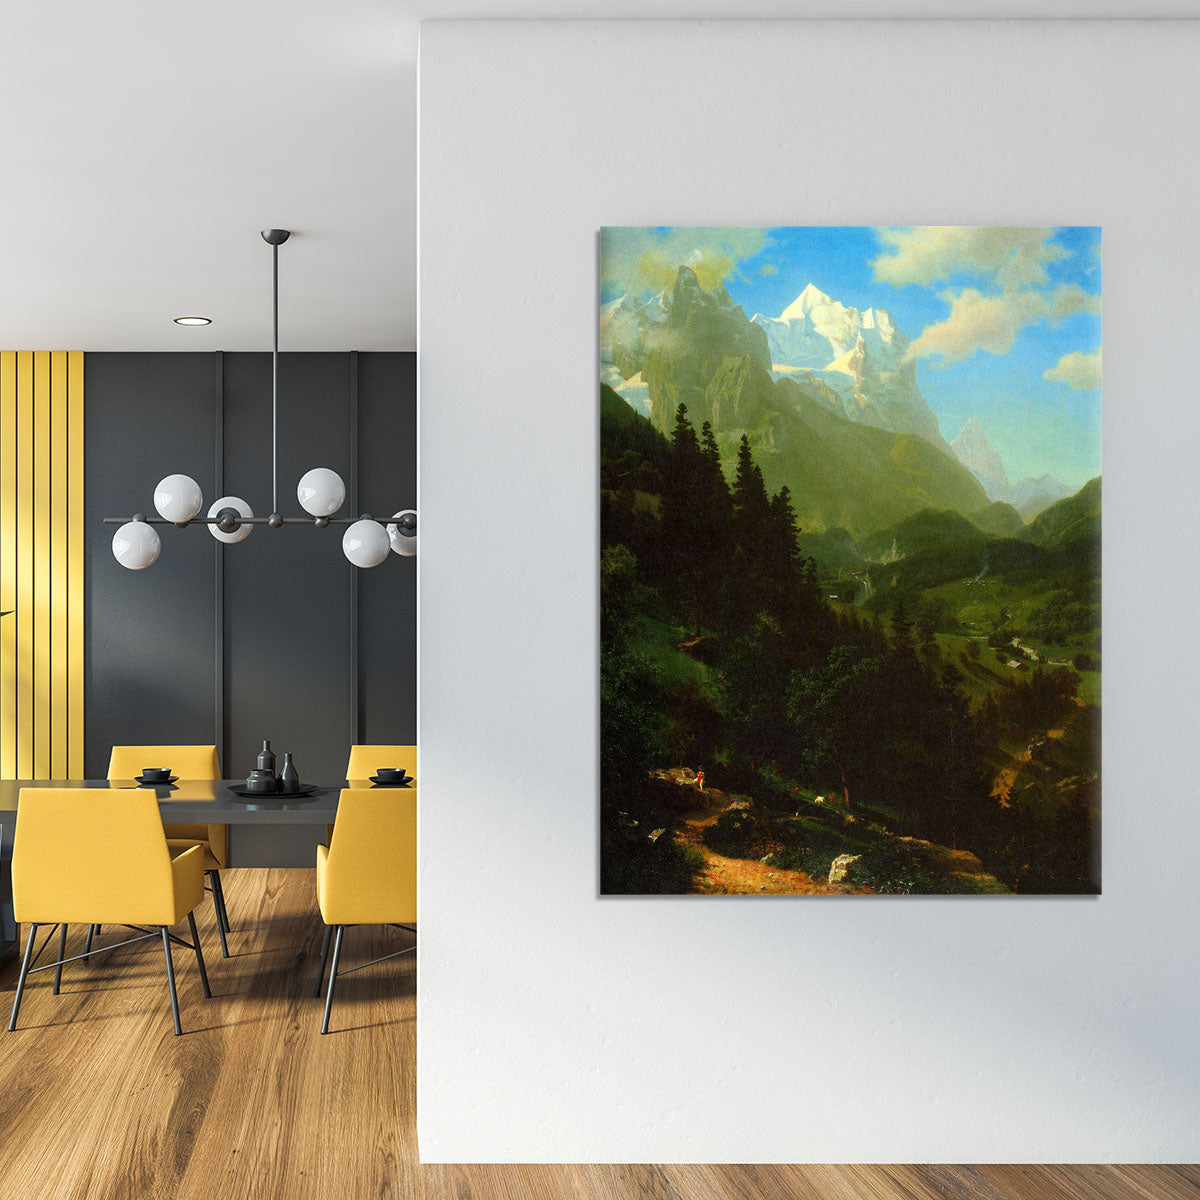 Matterhorn by Bierstadt Canvas Print or Poster - Canvas Art Rocks - 4